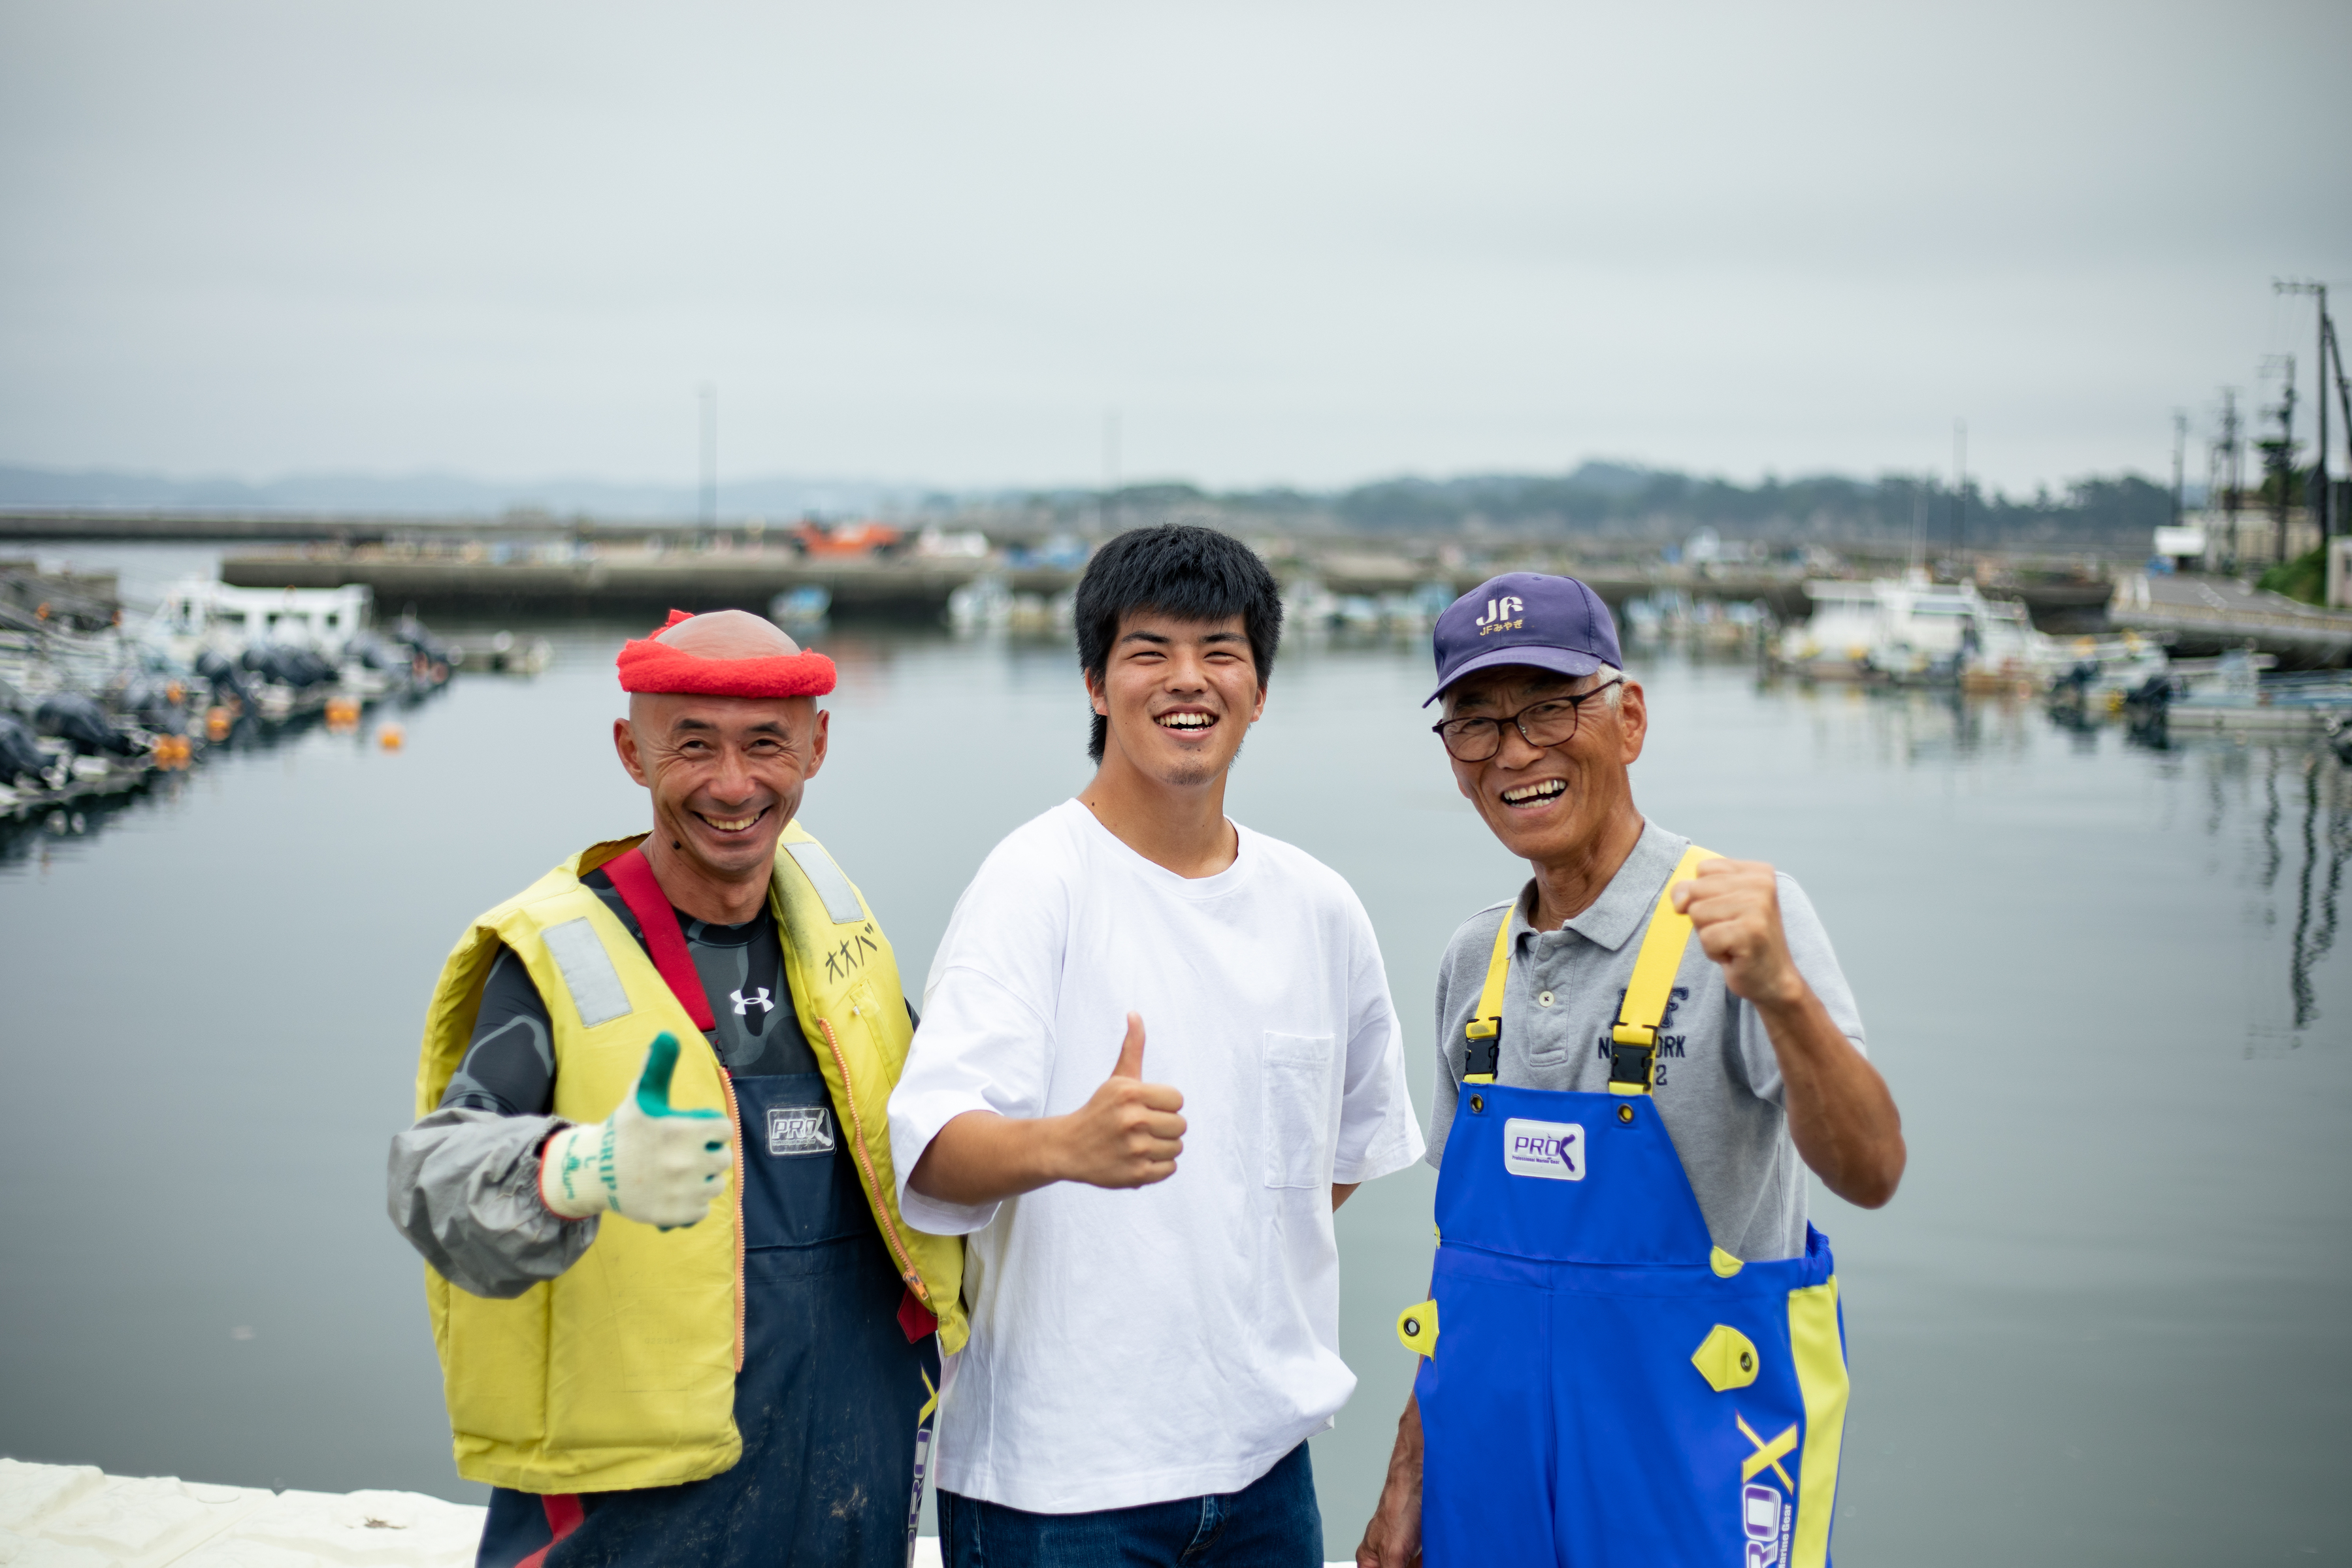 【宮城/漁業/相談】第2弾~みやぎの海で漁師になろう！2021みやぎ漁業就業支援オンラインフェア~